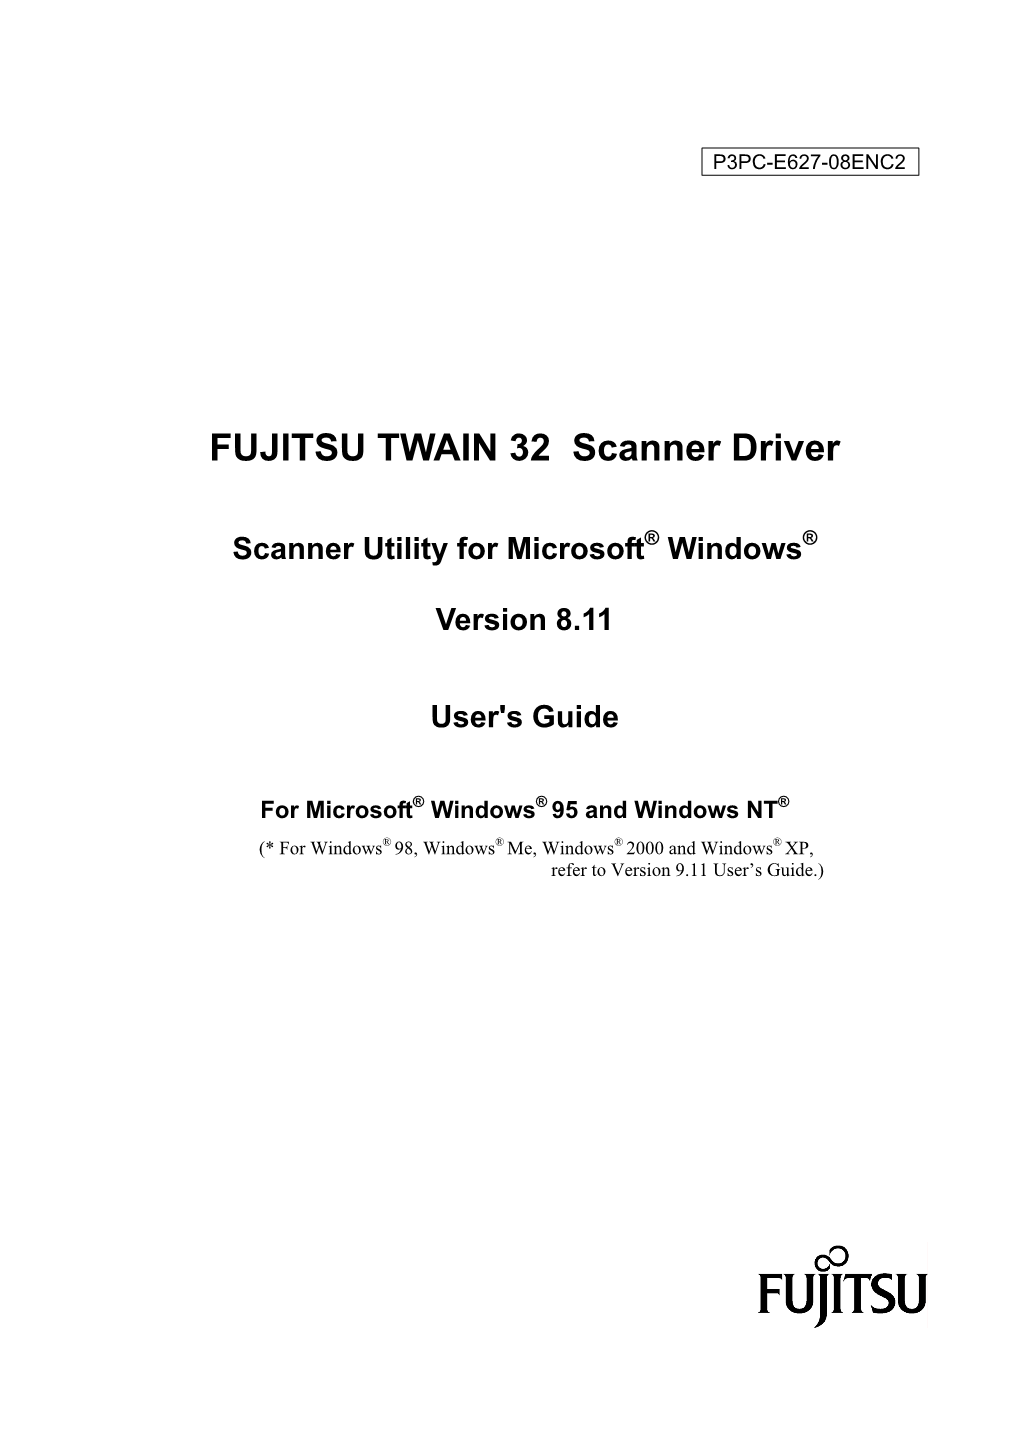 FUJITSU TWAIN 32 Scanner Driver